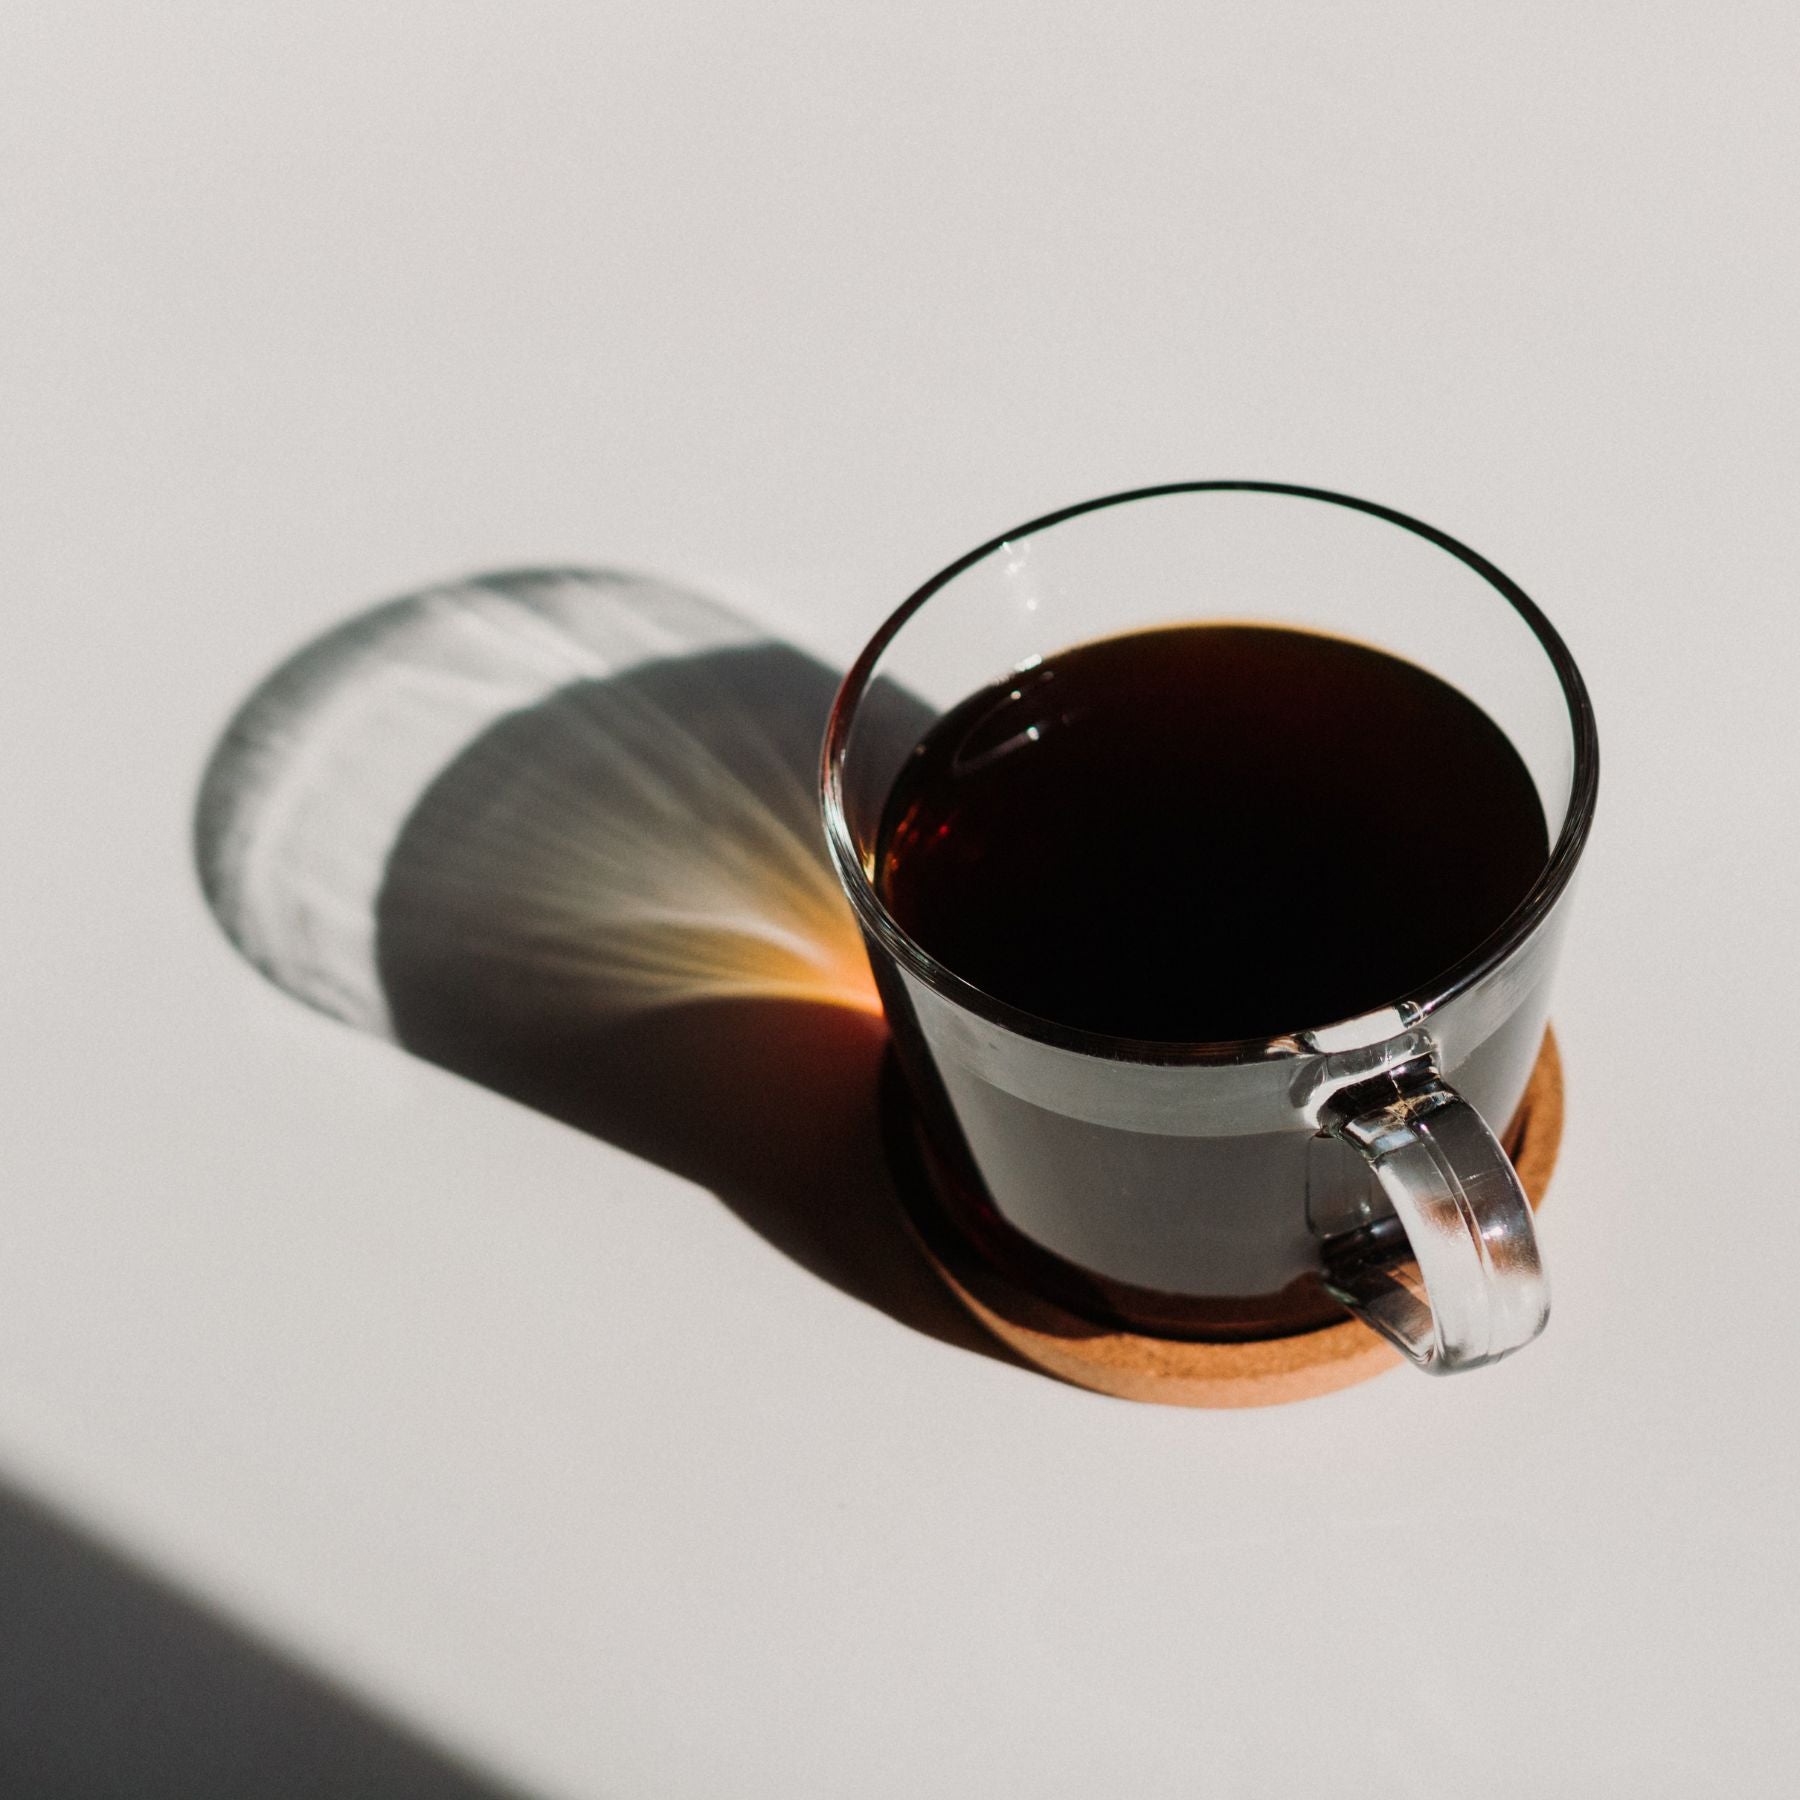 nurucoffee - nachhaltiger Kaffee im Kaffeeabo erhältlich. 